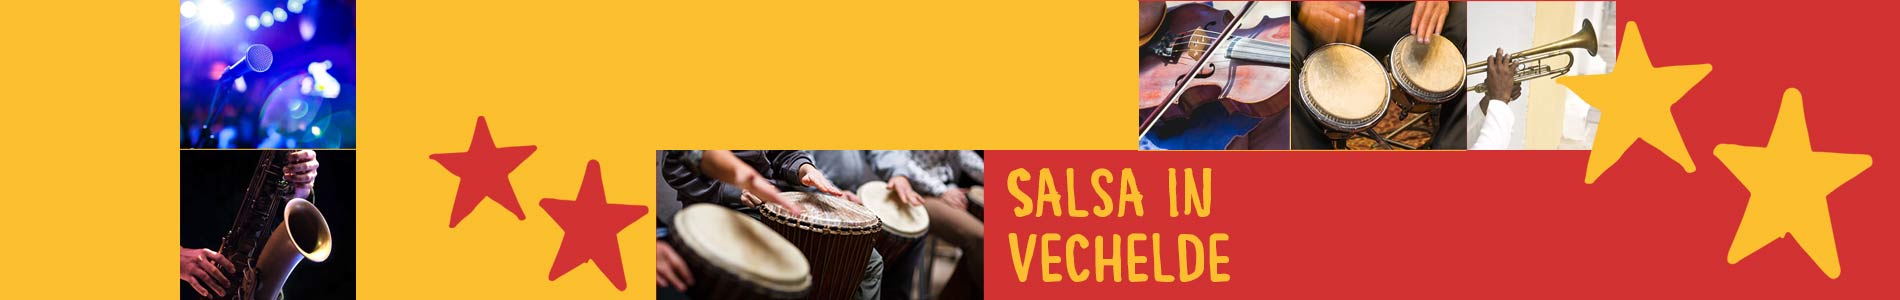 Salsa in Vechelde – Salsa lernen und tanzen, Tanzkurse, Partys, Veranstaltungen